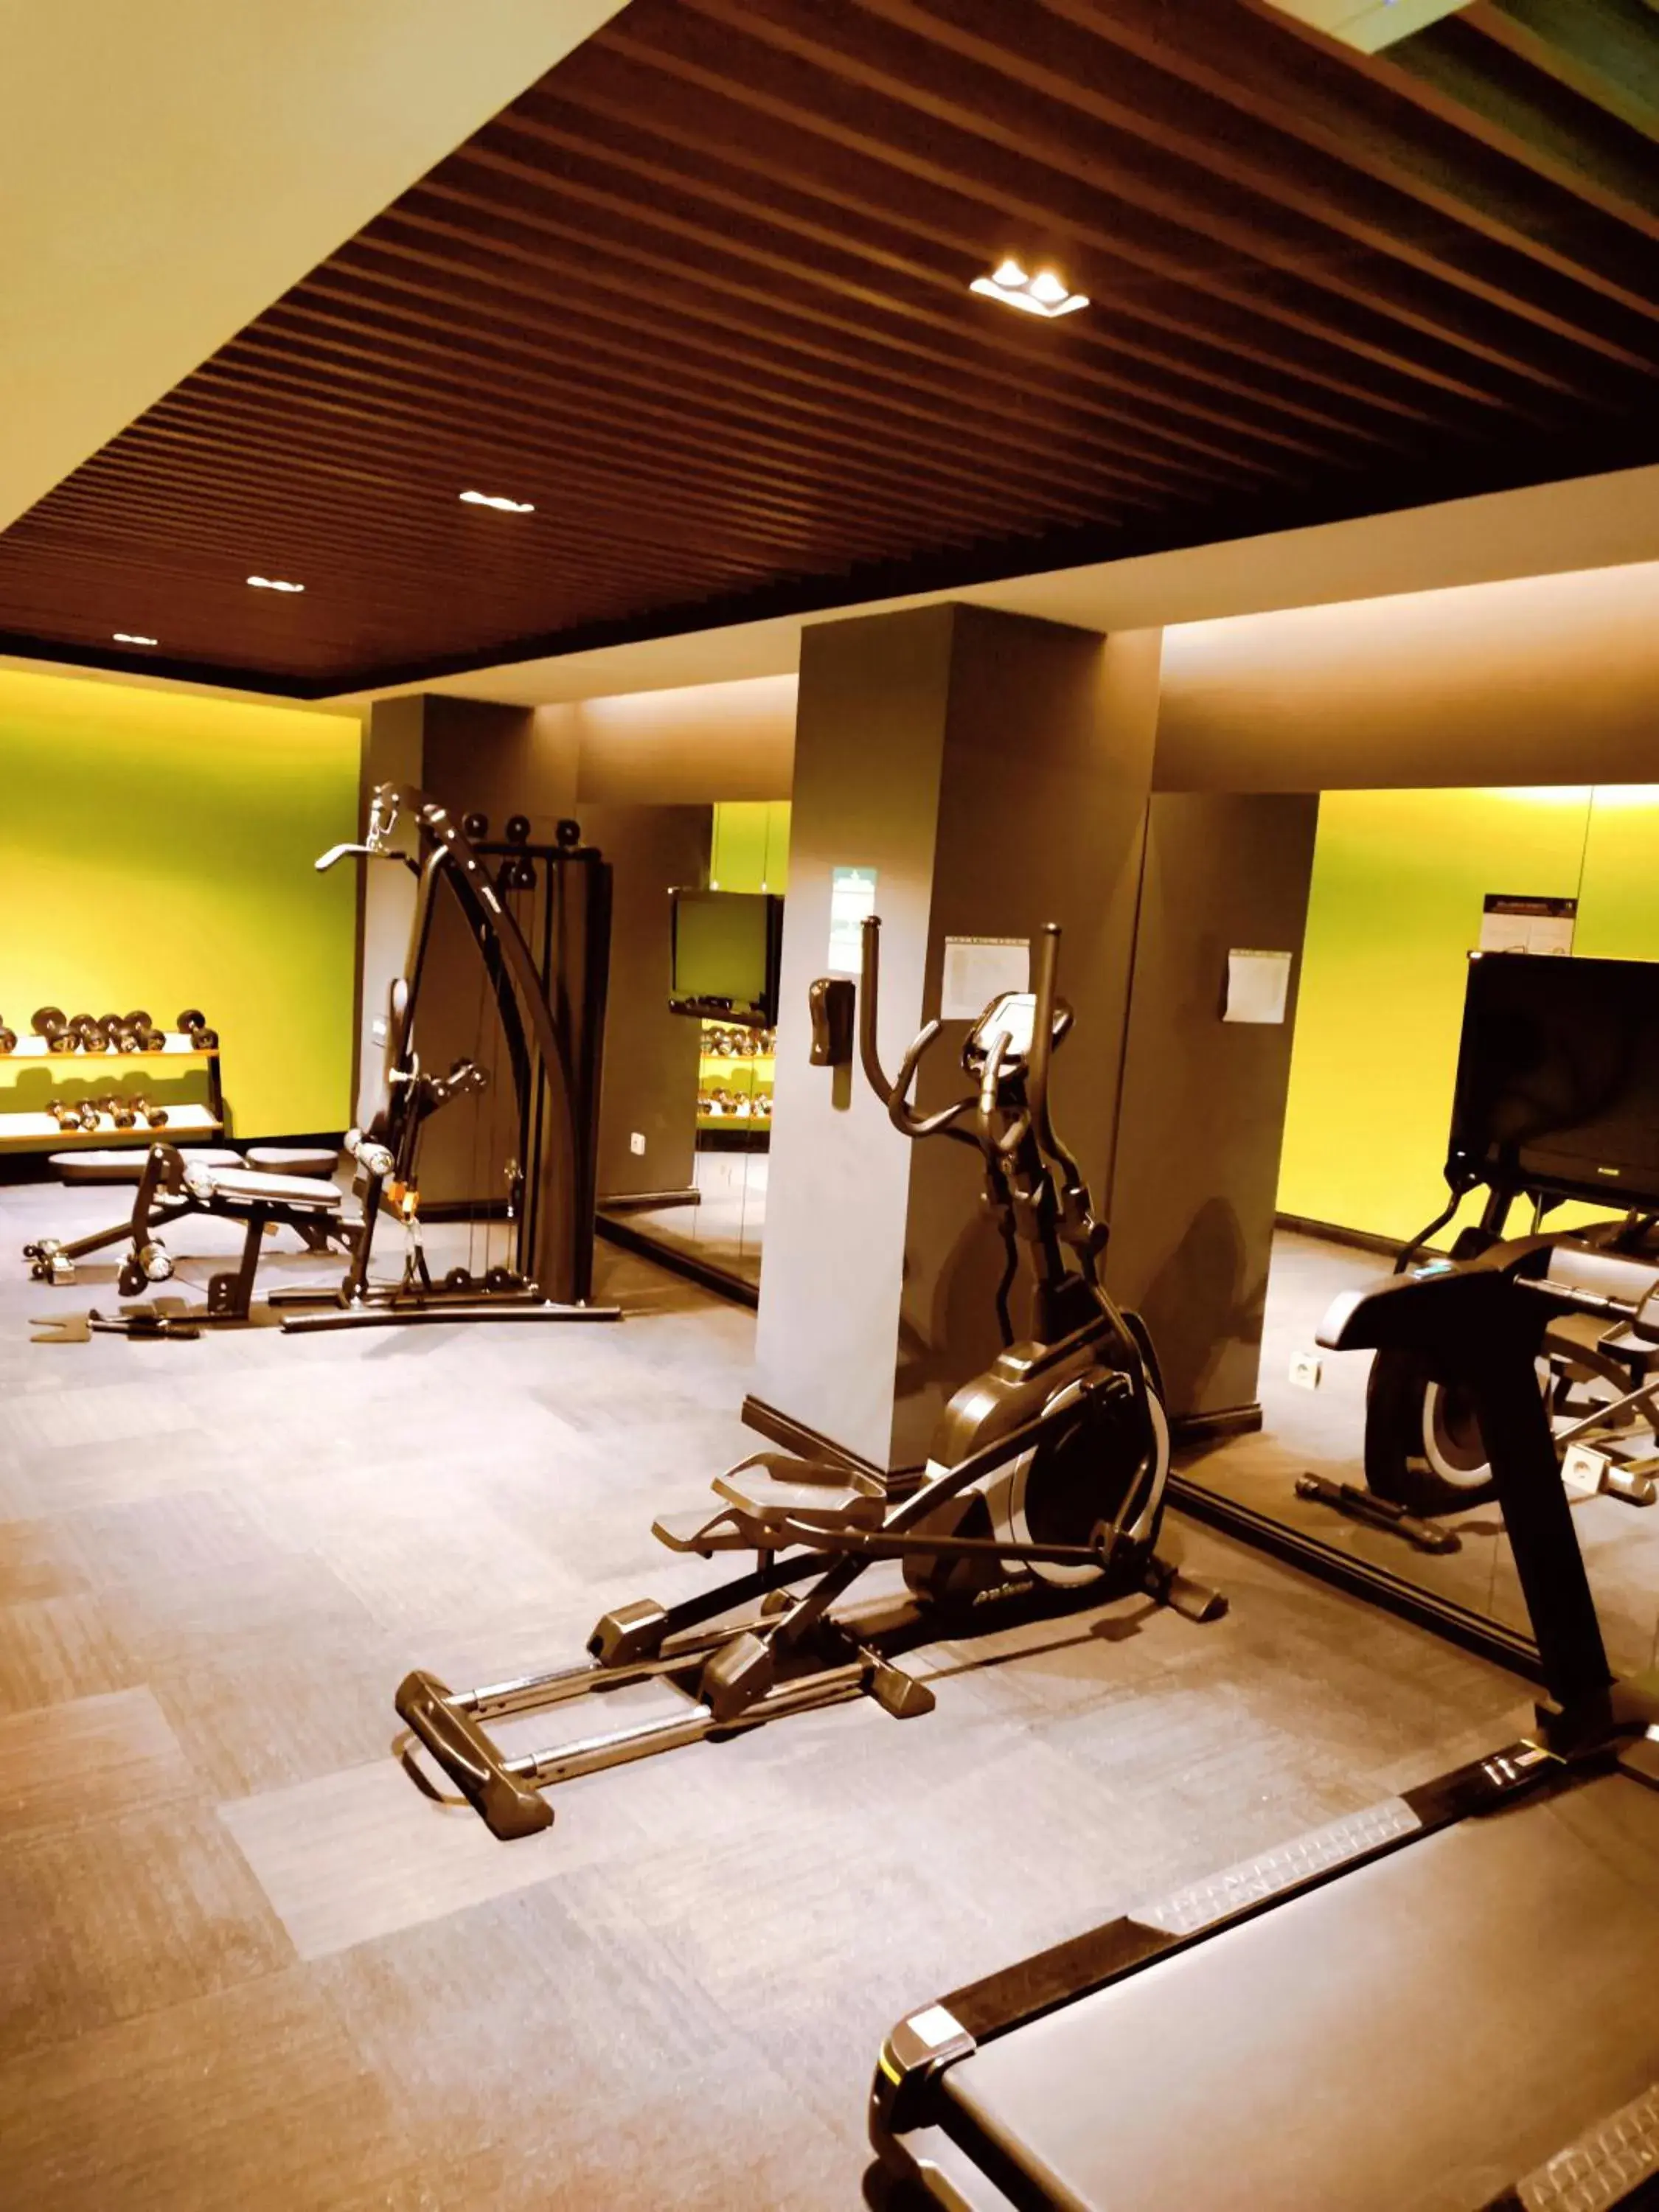 Fitness centre/facilities, Fitness Center/Facilities in Pasapark Karatay Hotel